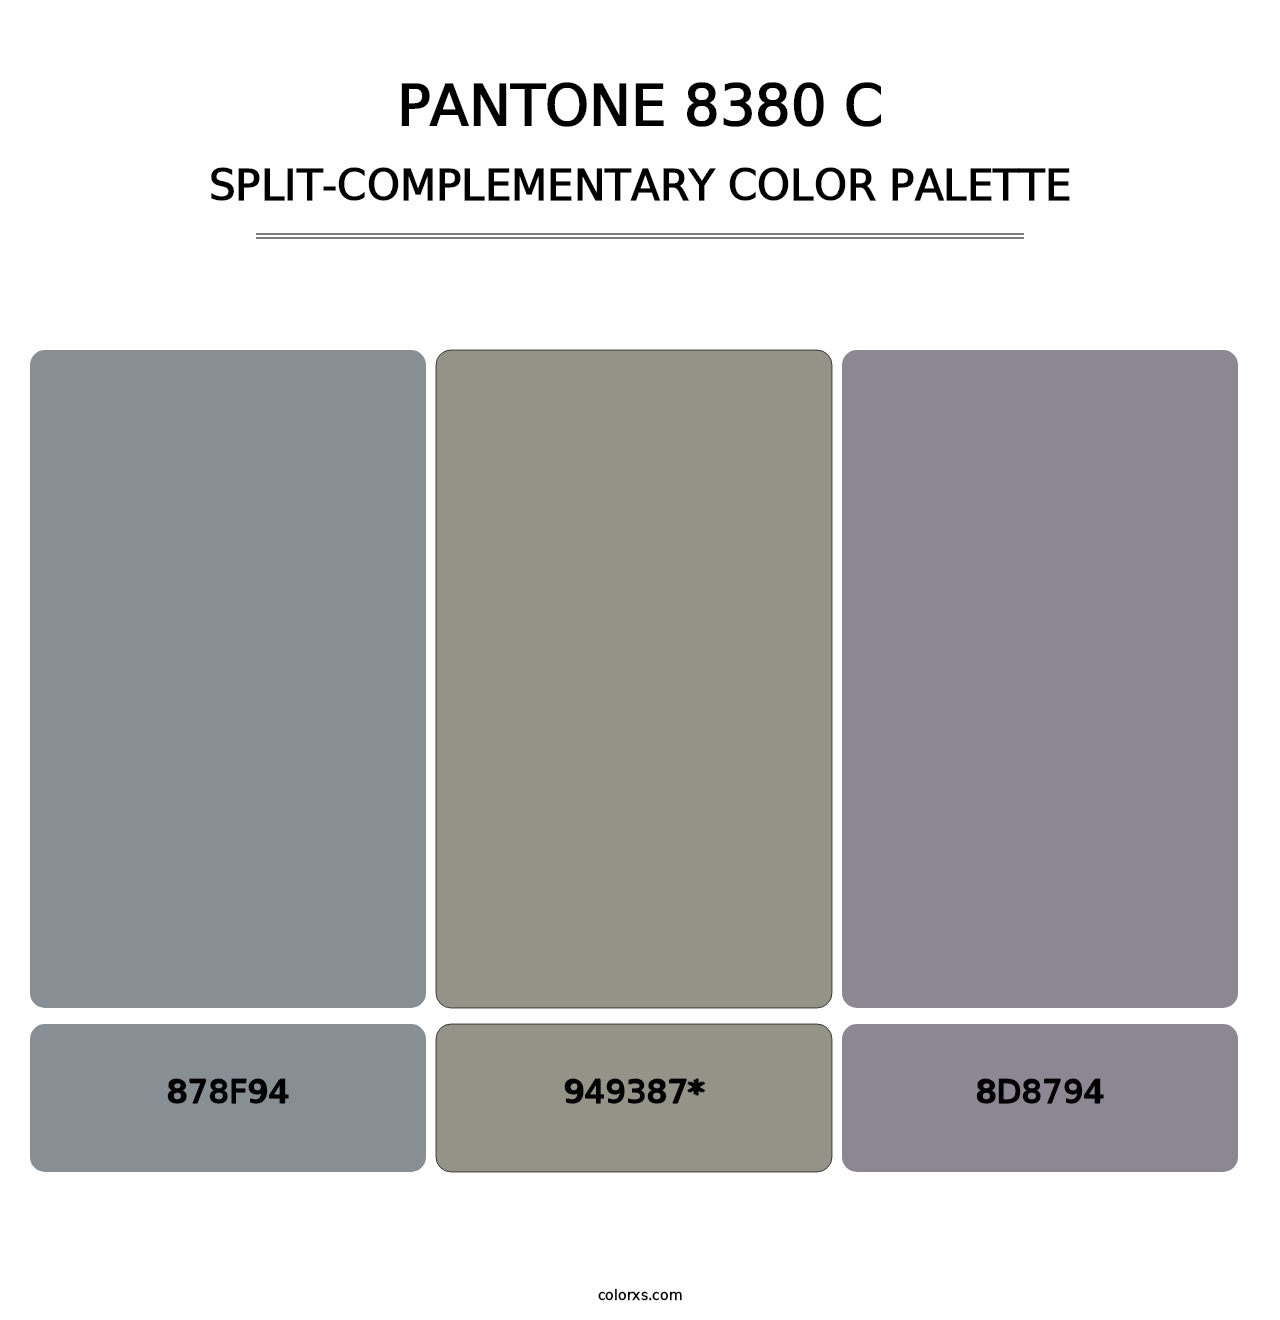 PANTONE 8380 C - Split-Complementary Color Palette